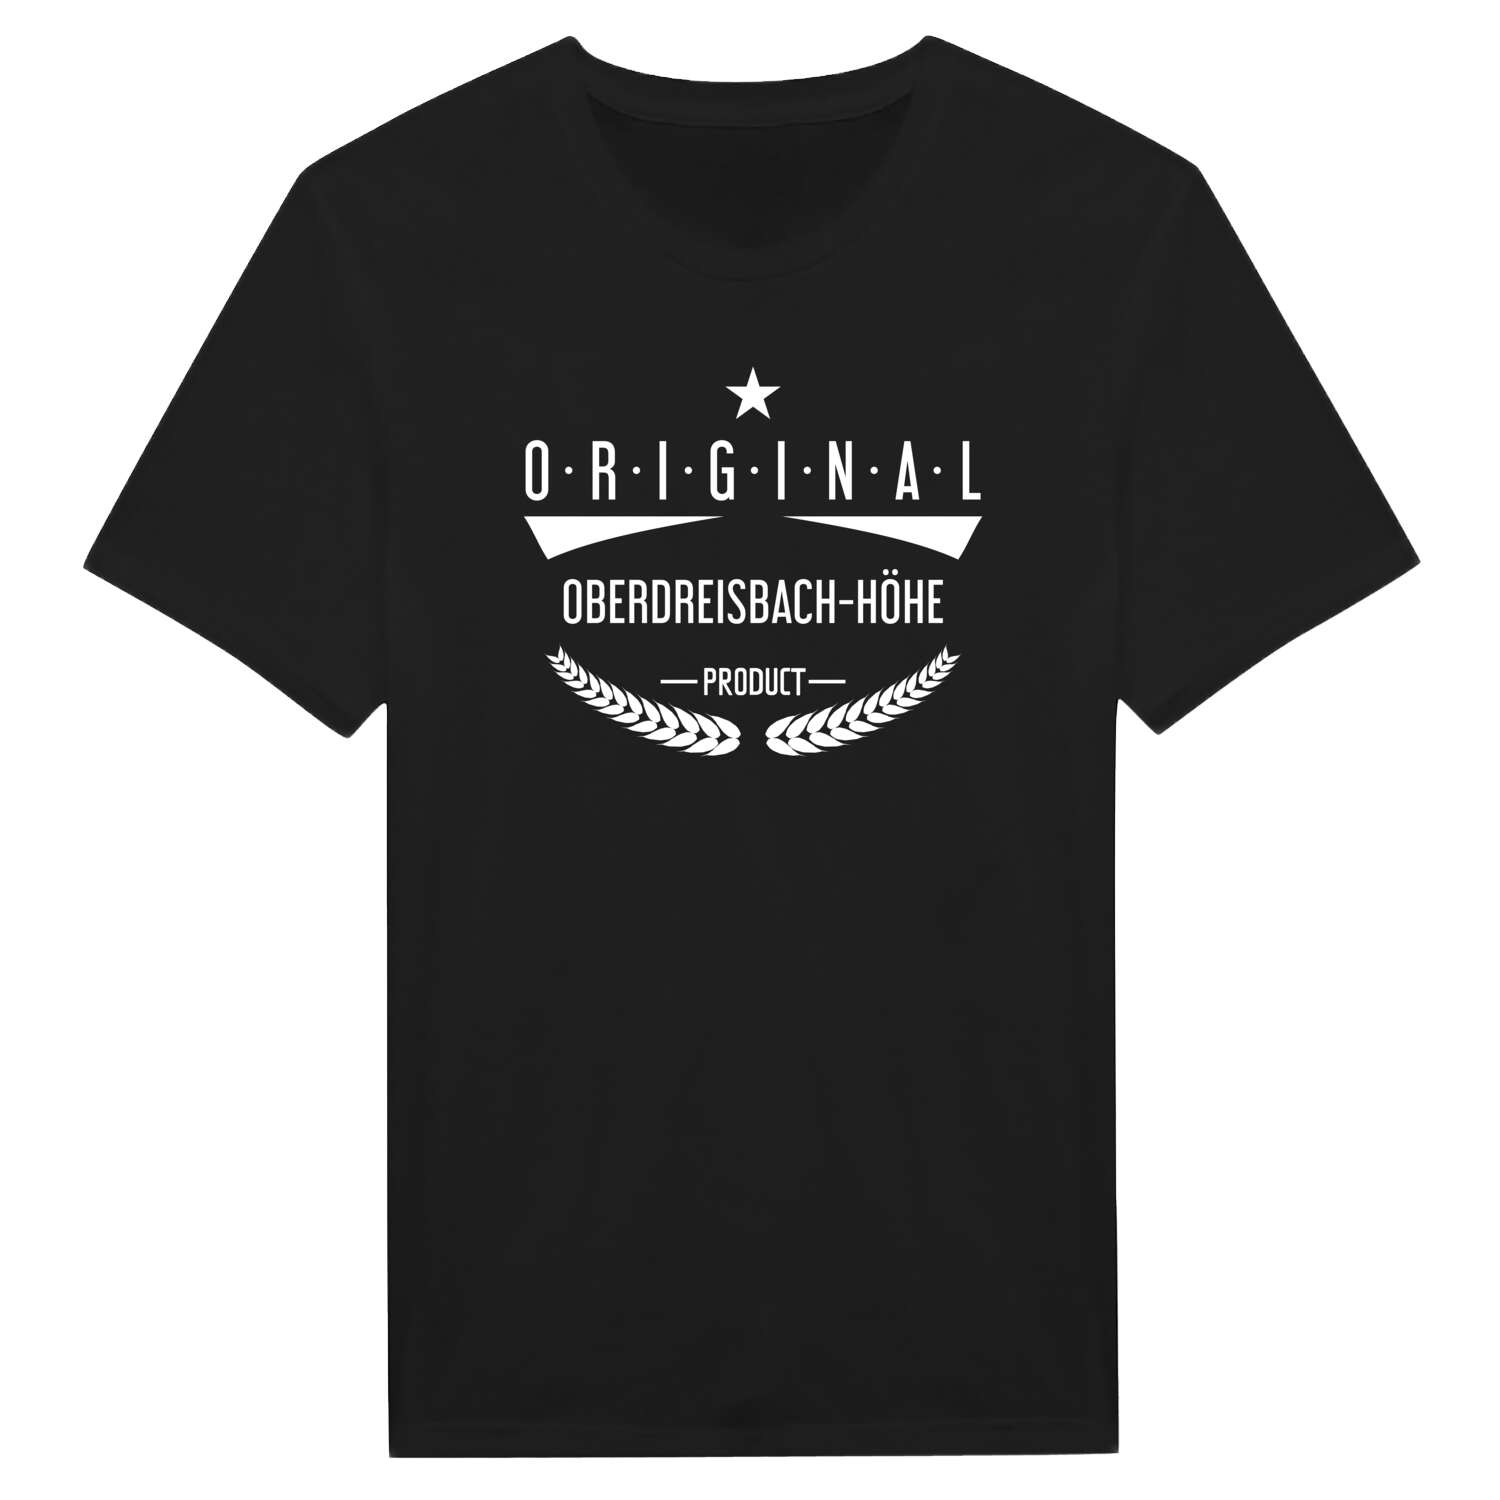 Oberdreisbach-Höhe T-Shirt »Original Product«